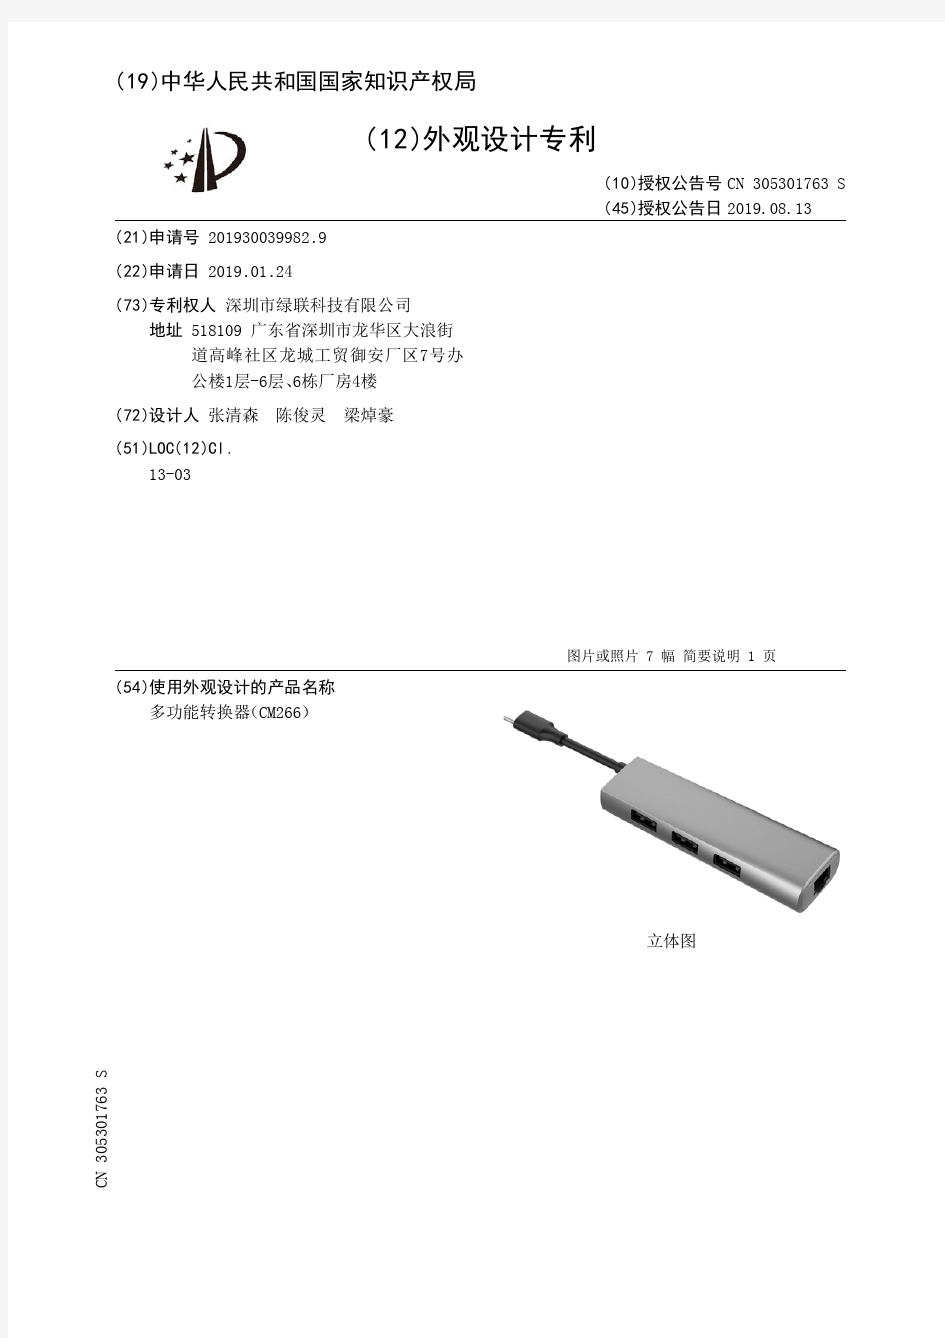 【CN305301763S】多功能转换器CM266【专利】